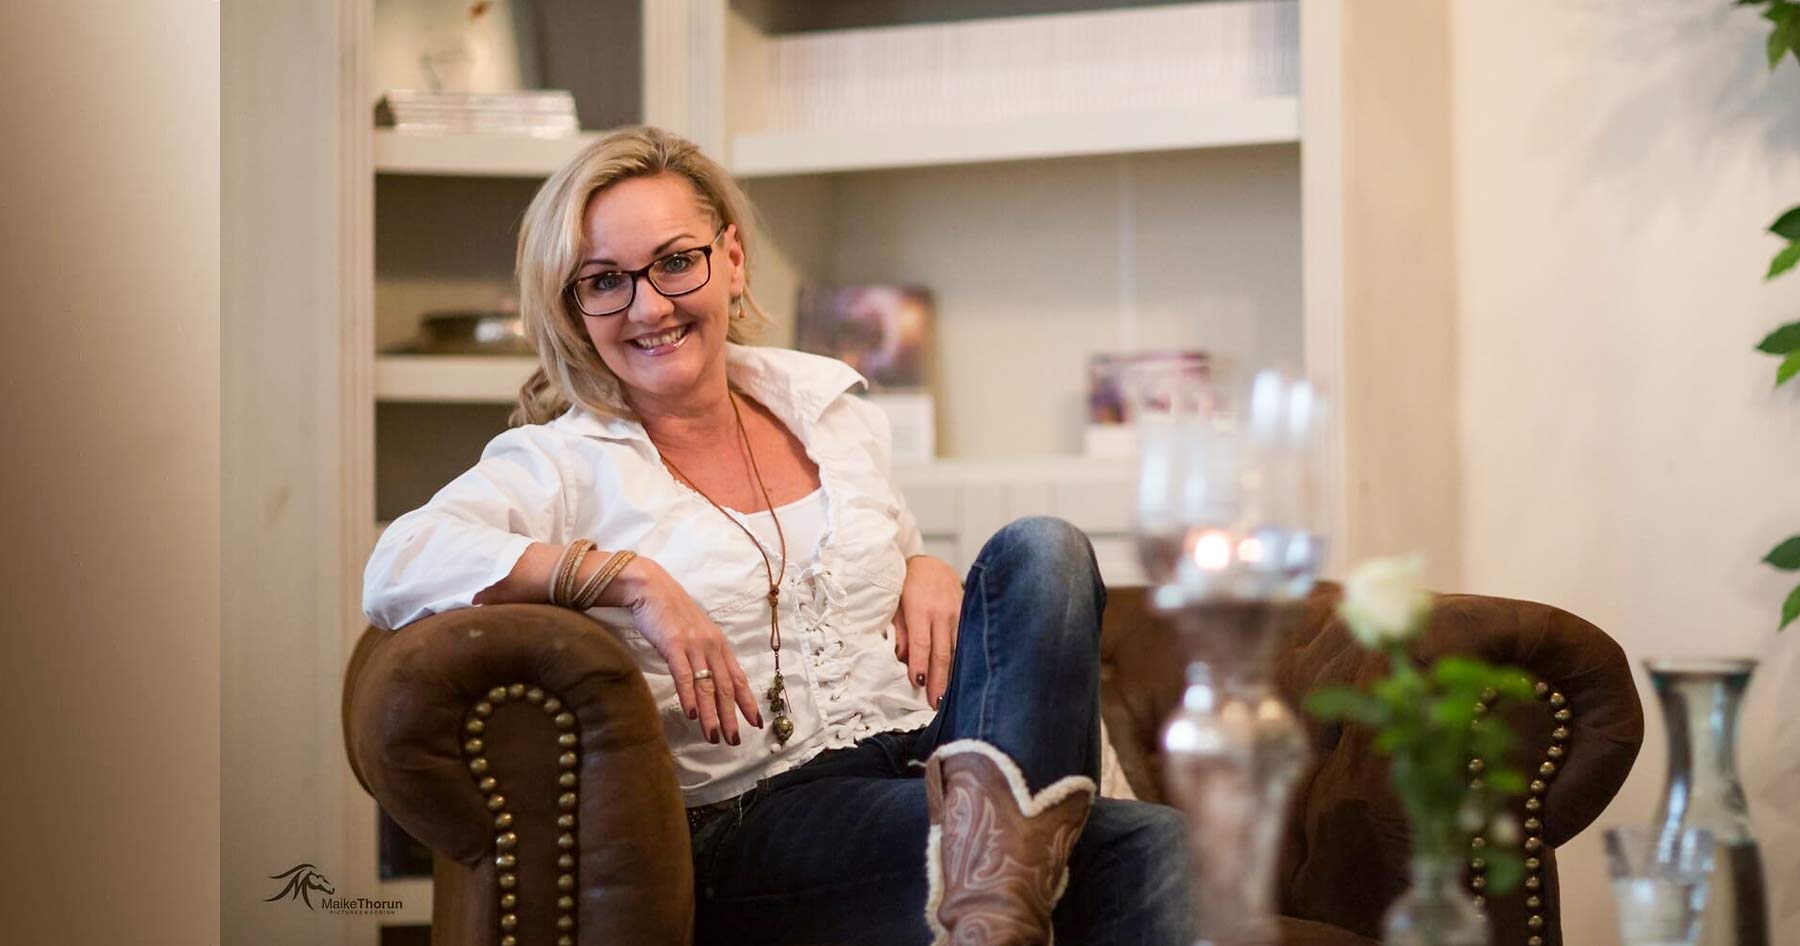 Gudrun Schönhofer ist Business-Muse, Coach und Sachbuch-Autorin